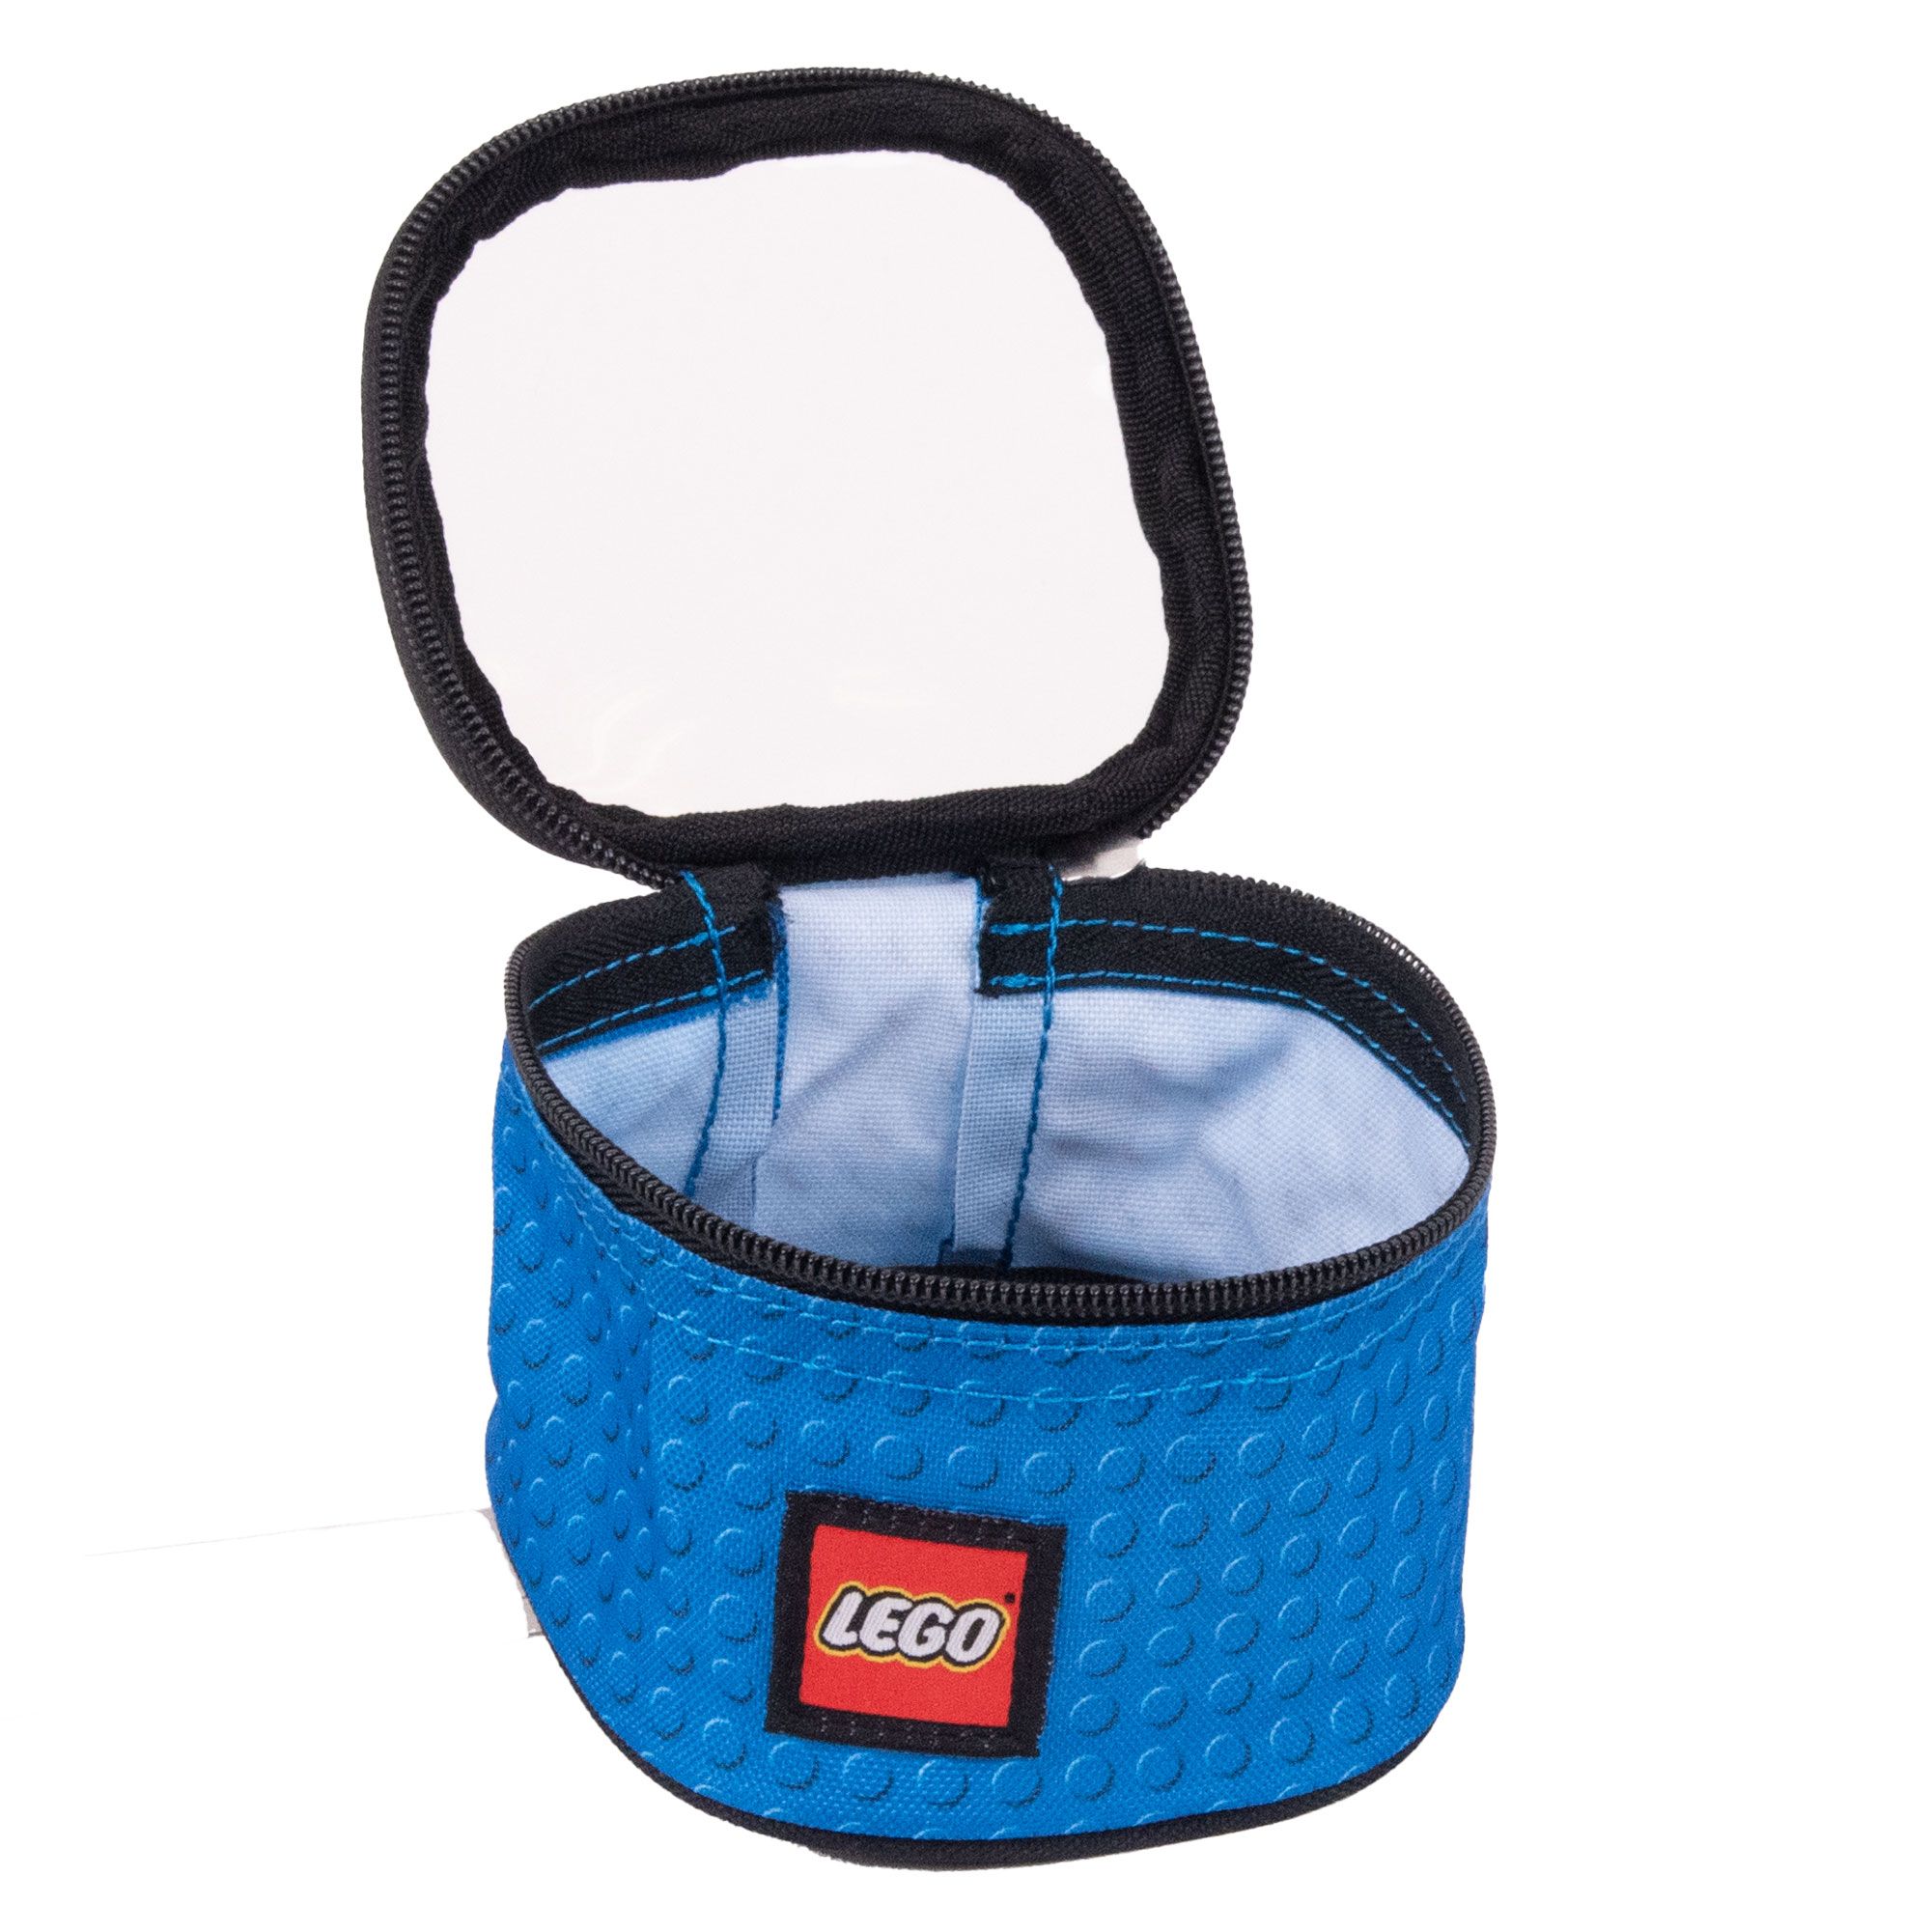 LEGO Gear 5006260 LEGO® Taschenset (3-teilig) LEGO_5006260_alt4.jpg